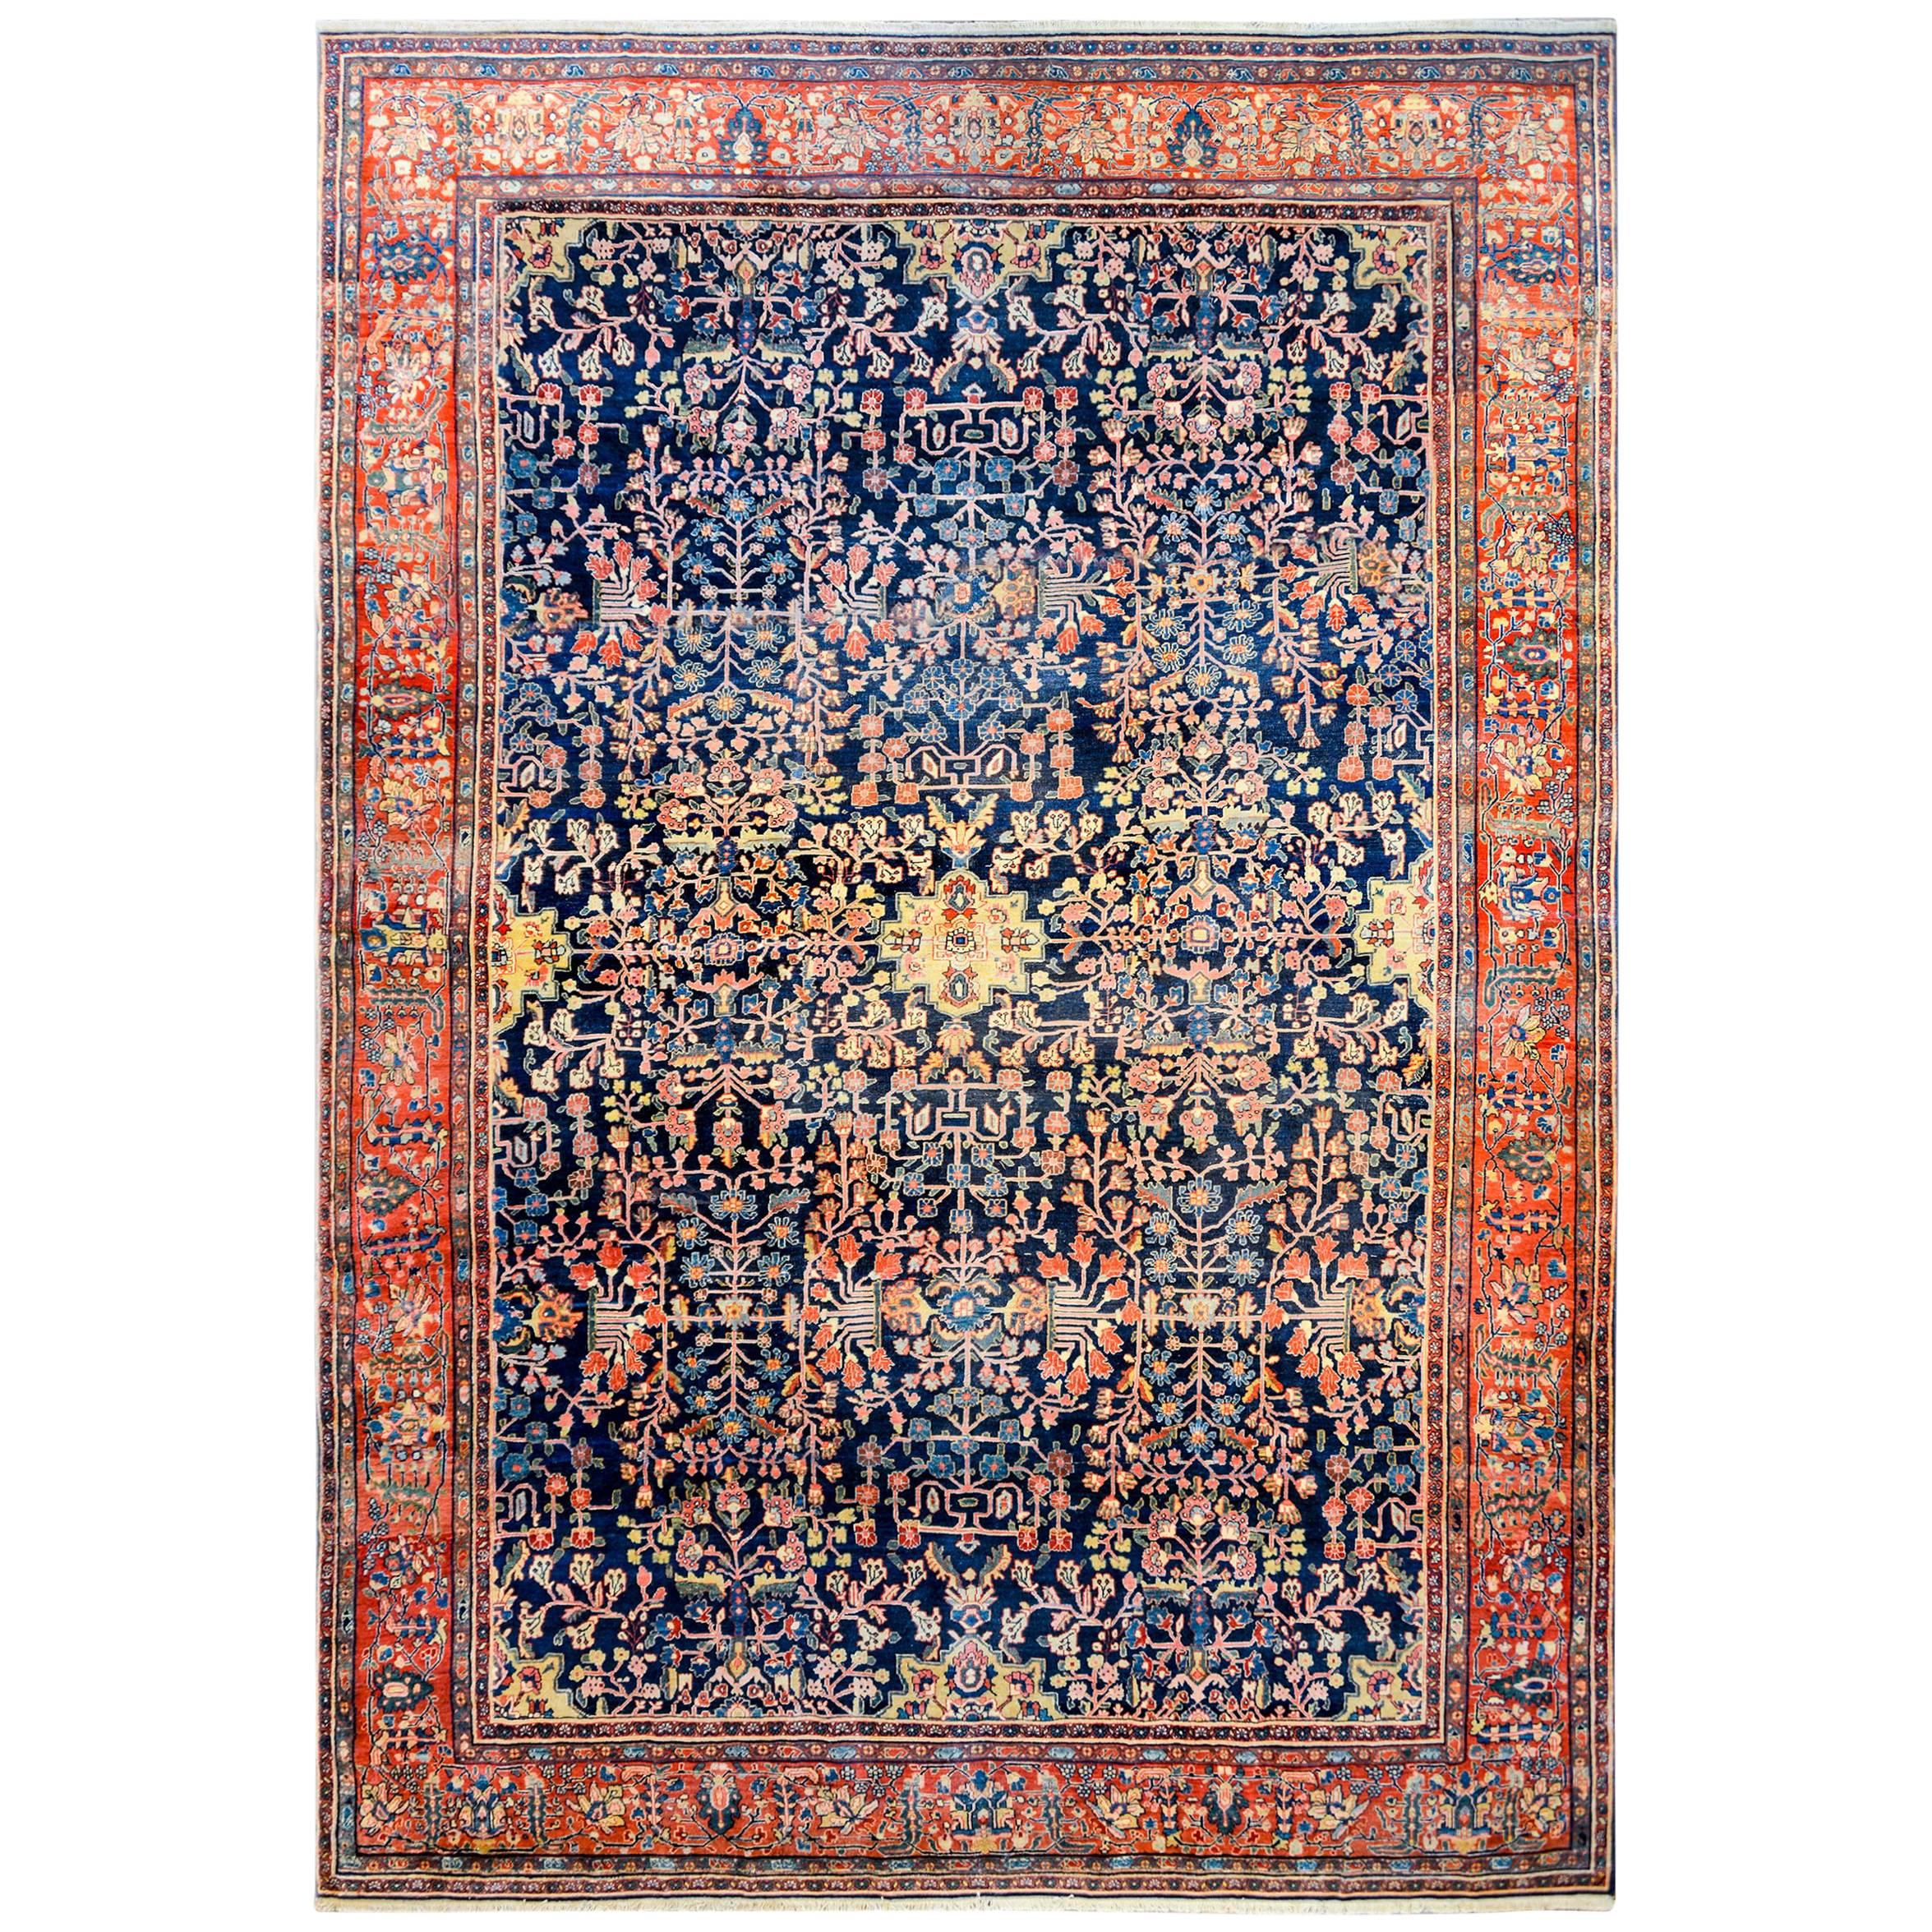 Incroyable tapis Sarouk Farahan de la fin du 19ème siècle